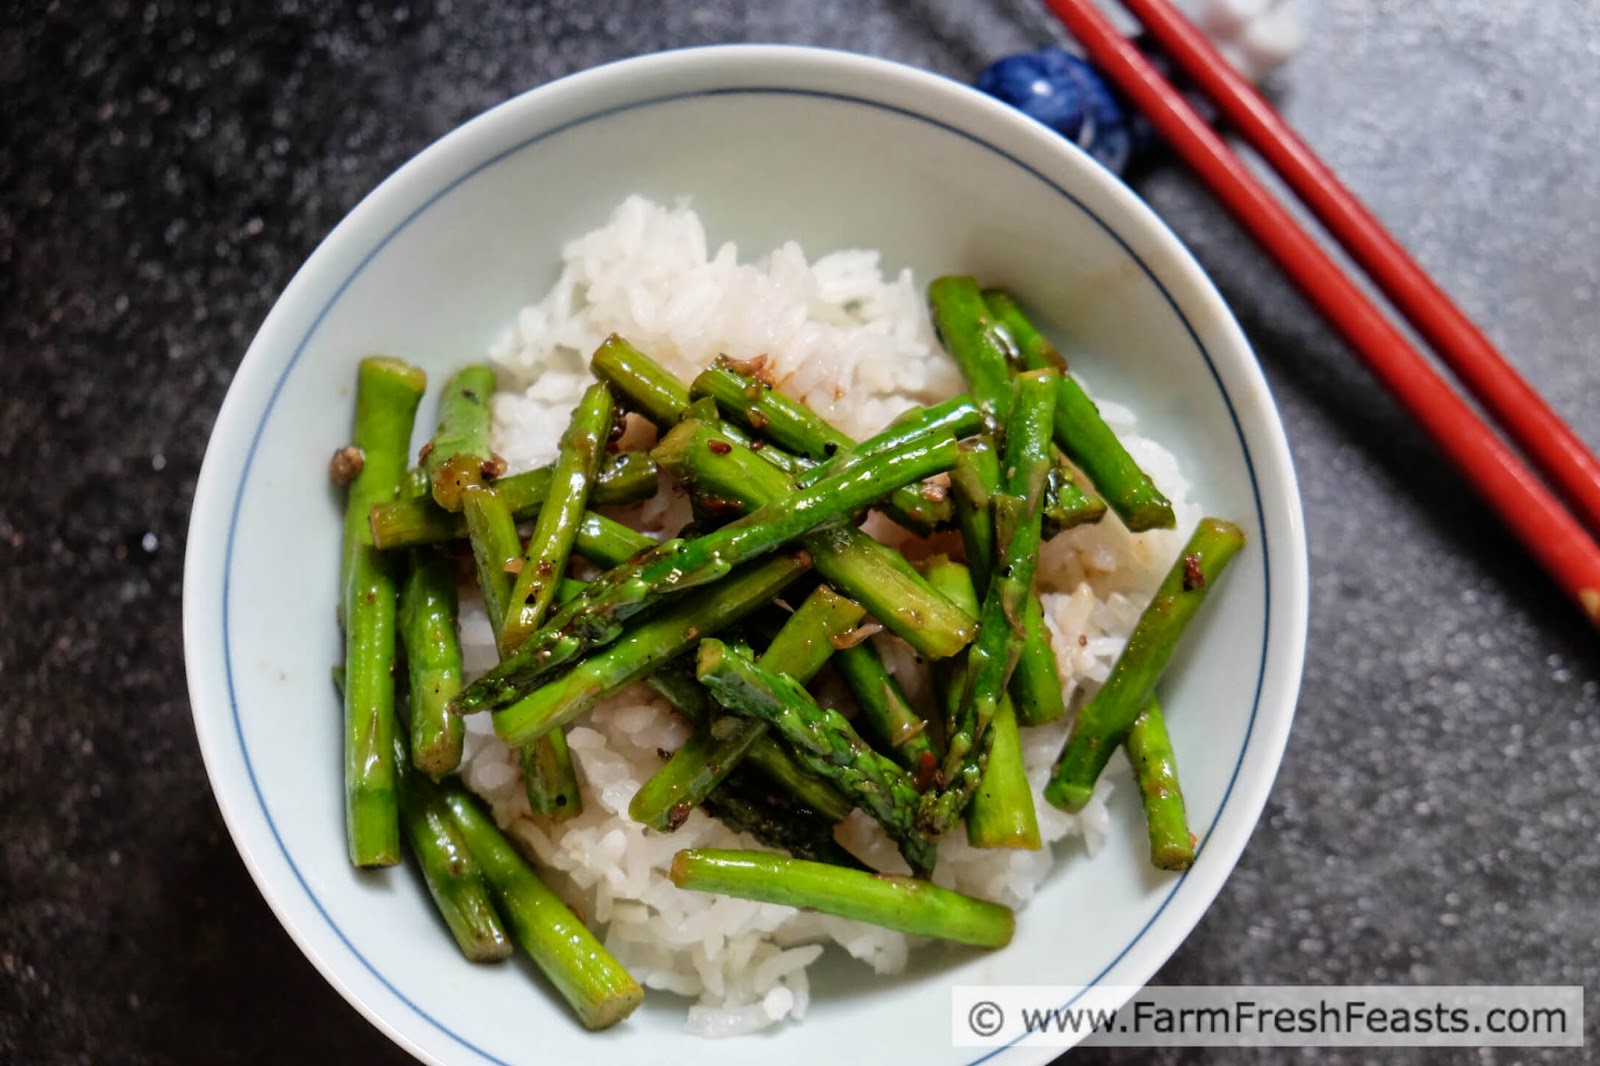 http://www.farmfreshfeasts.com/2015/04/szechuan-asparagus-with-ma-po-sauce.html